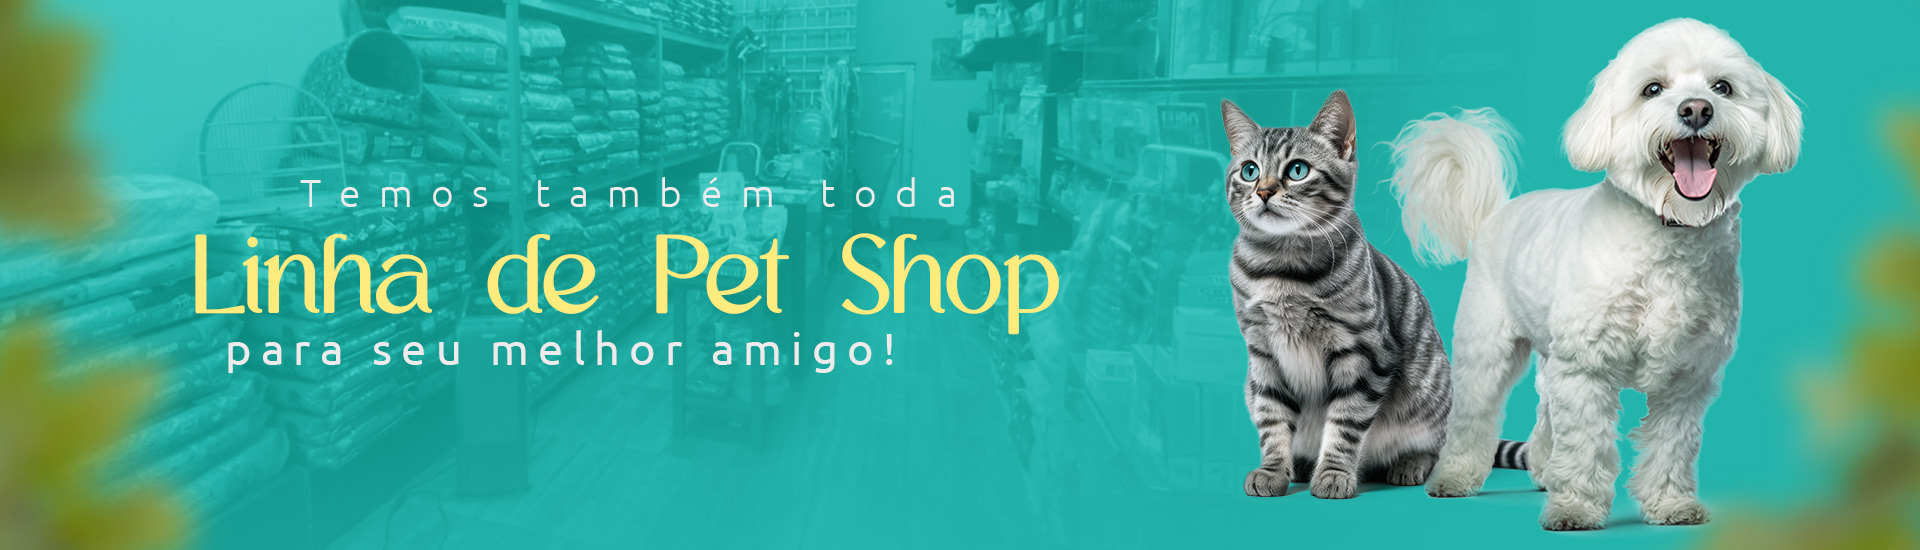 Temos também toda linha de Pet Shop para seu melhor amigo!